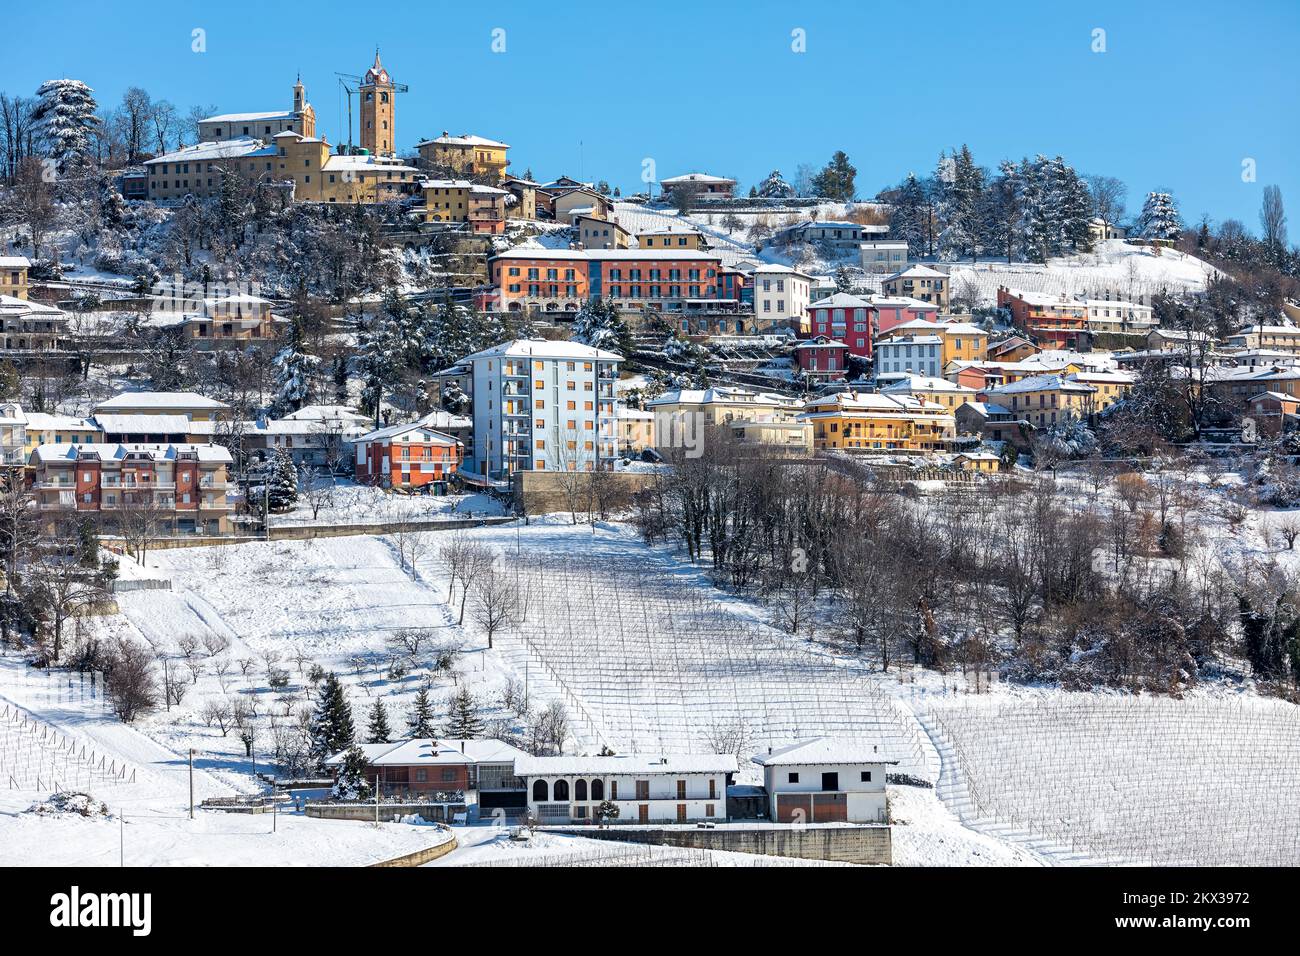 Veduta della cittadina su una collina innevata sotto il cielo blu in Piemonte, Italia settentrionale. Foto Stock